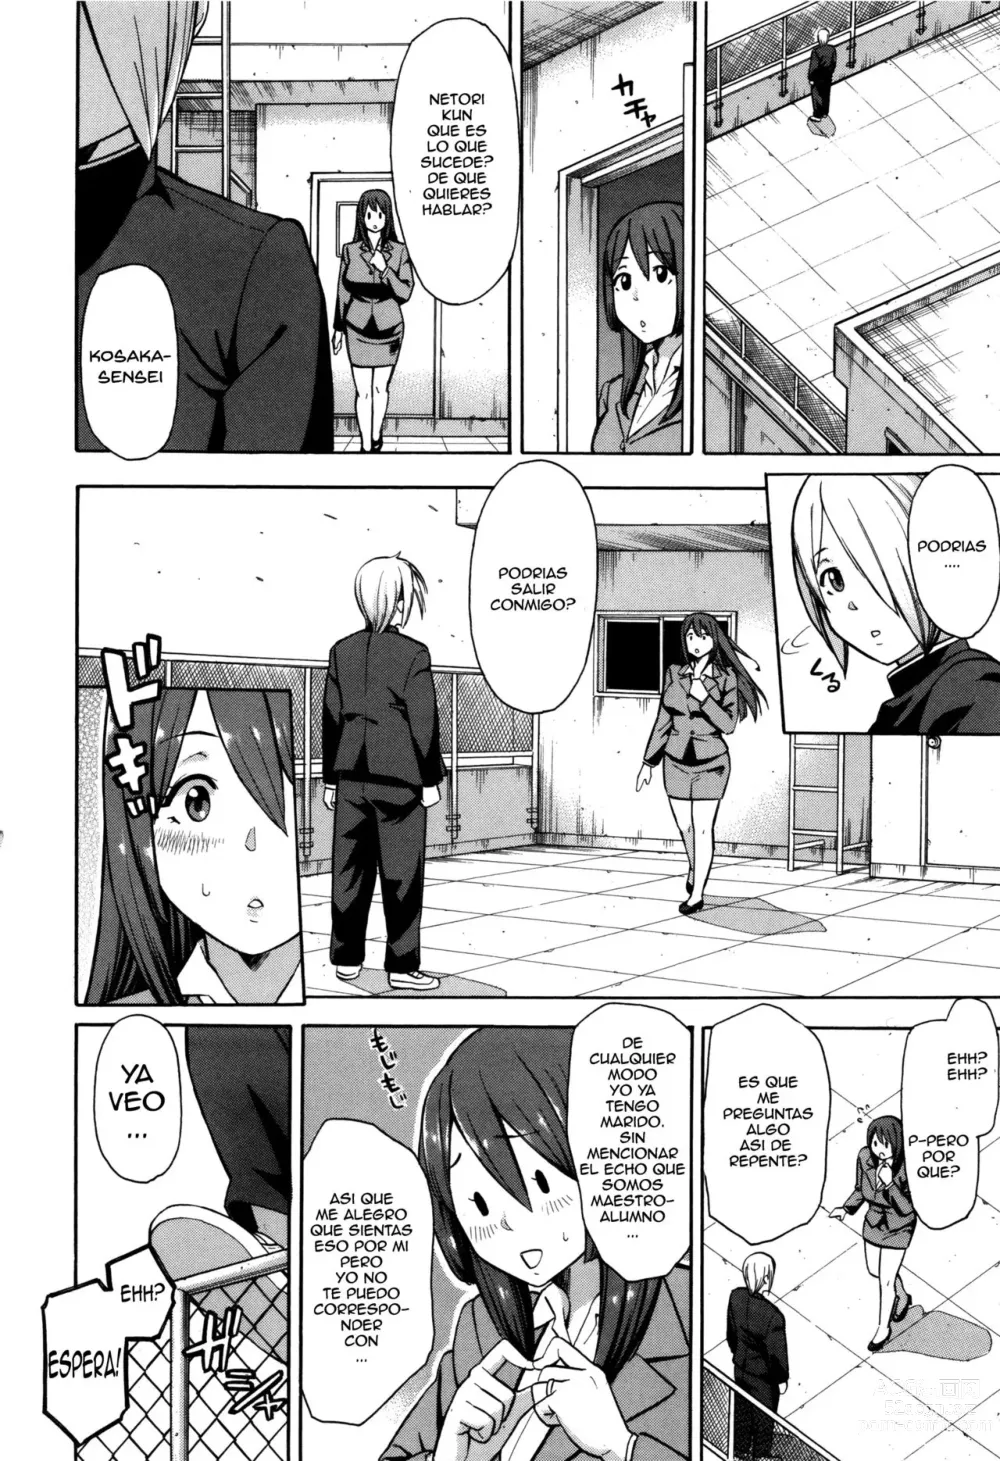 Page 6 of manga Netoriya Honpo